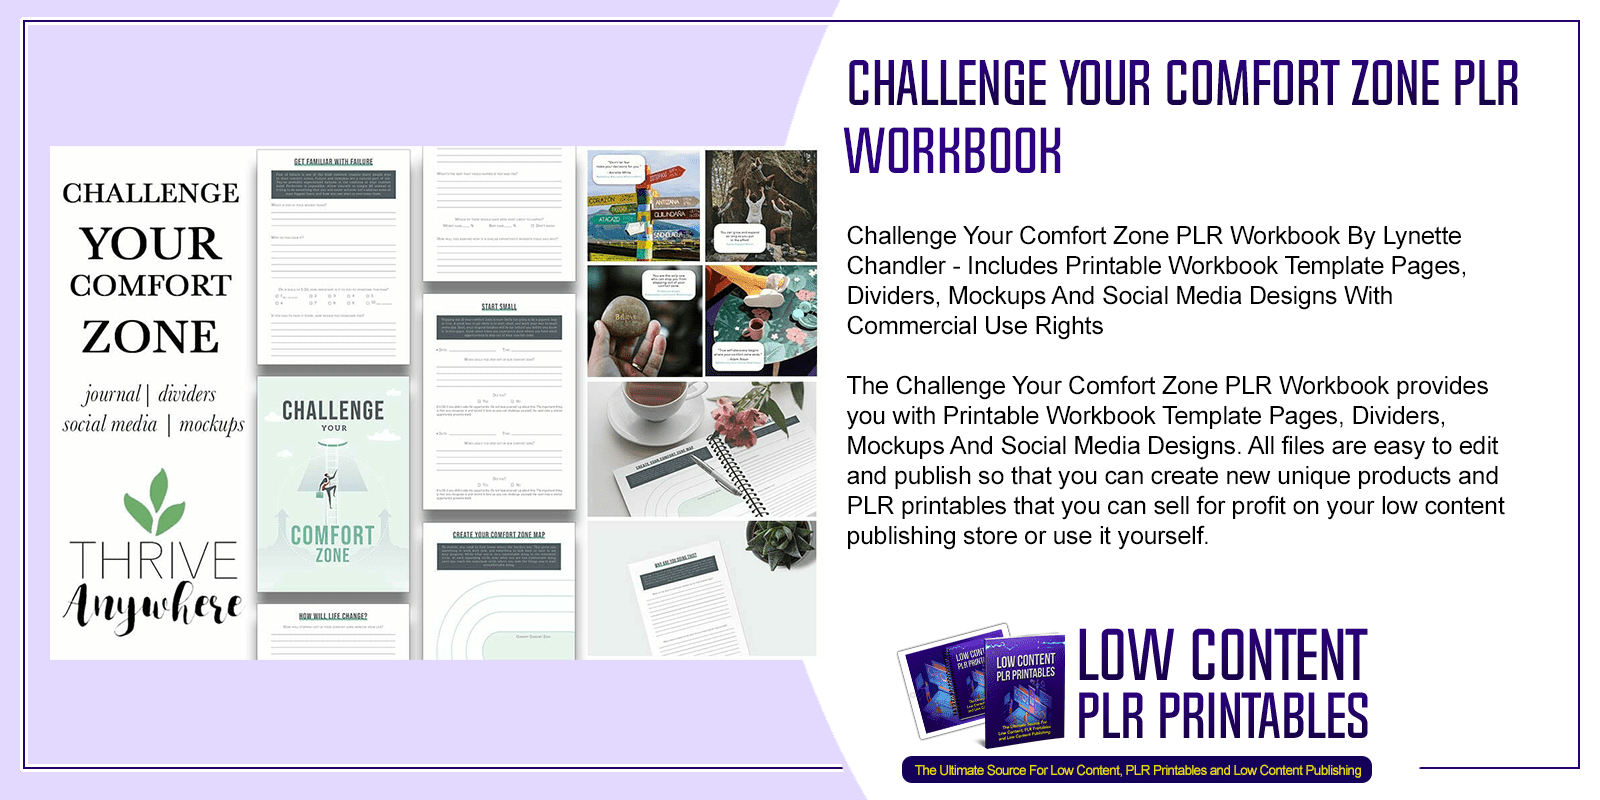 Challenge Your Comfort Zone PLR Workbook